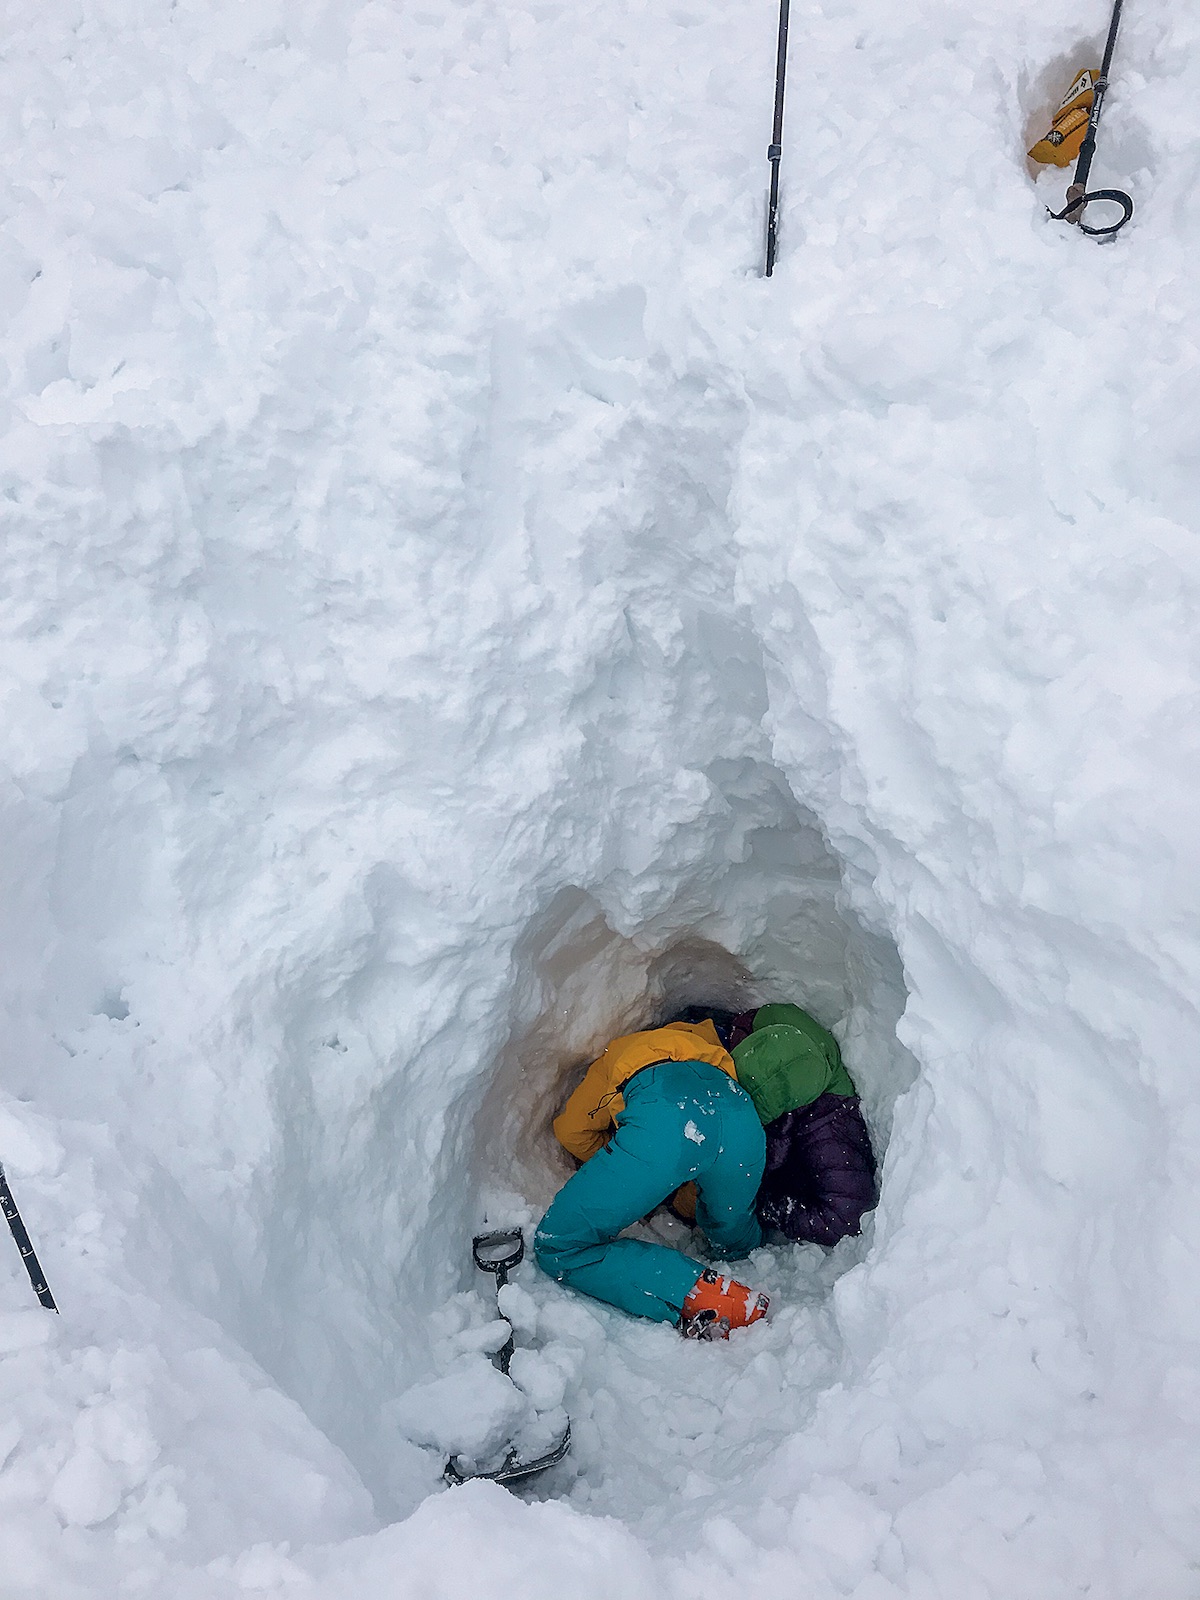 Deep in the consolidated avalanche debris, Maia Schumacher excavates snow around Michelle Kadatz. [Photo] Tim Banfield